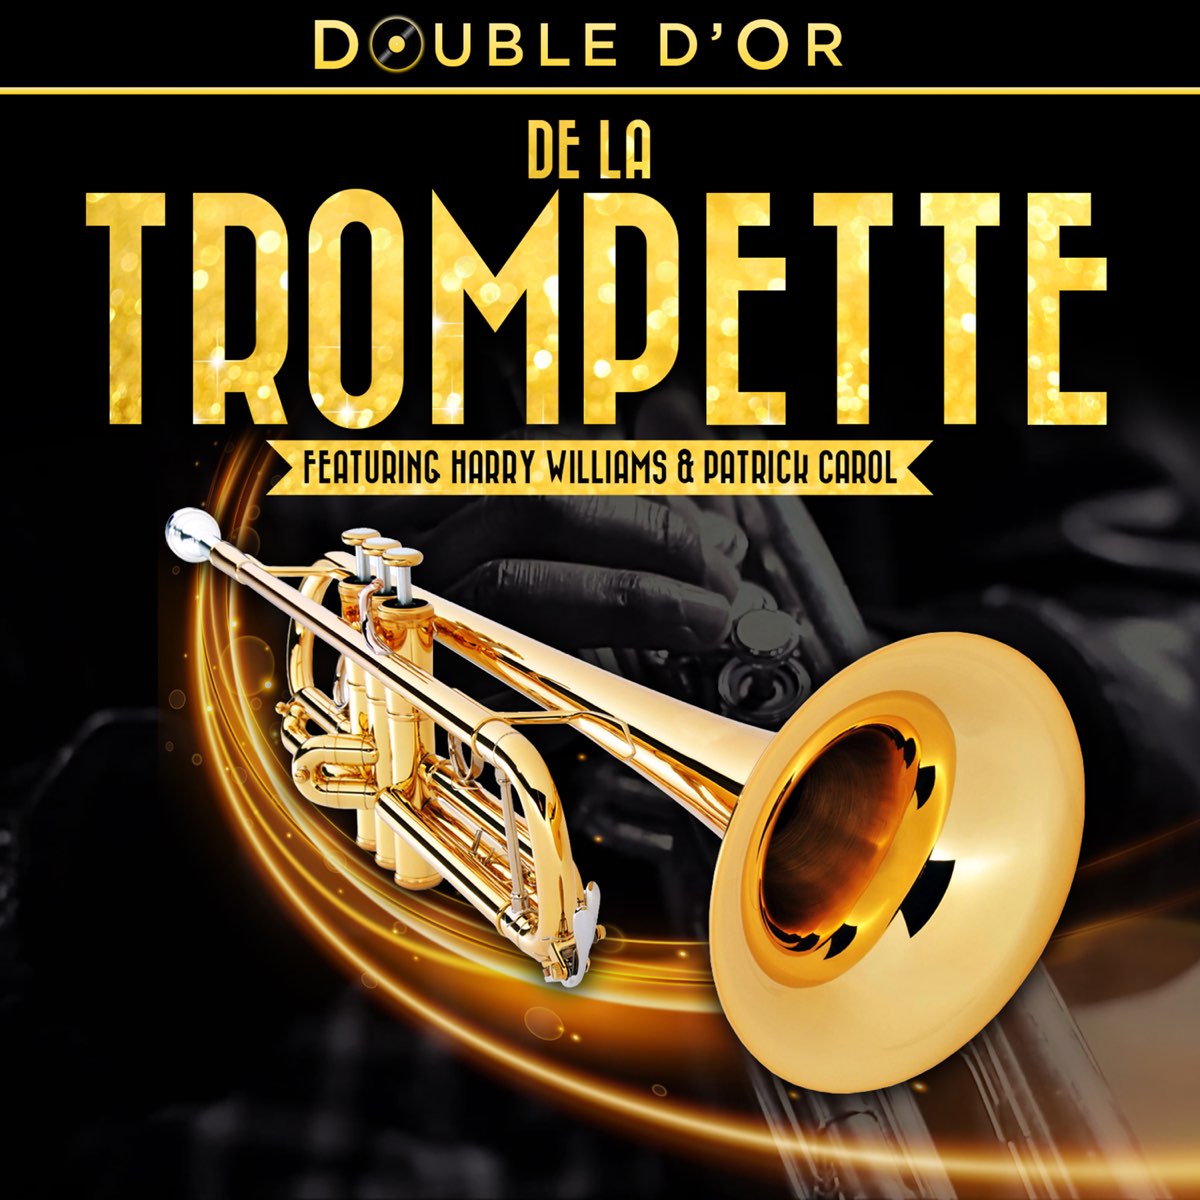 Double d'or de la trompette – Album par Harry Williams & Patrick Carol –  Apple Music